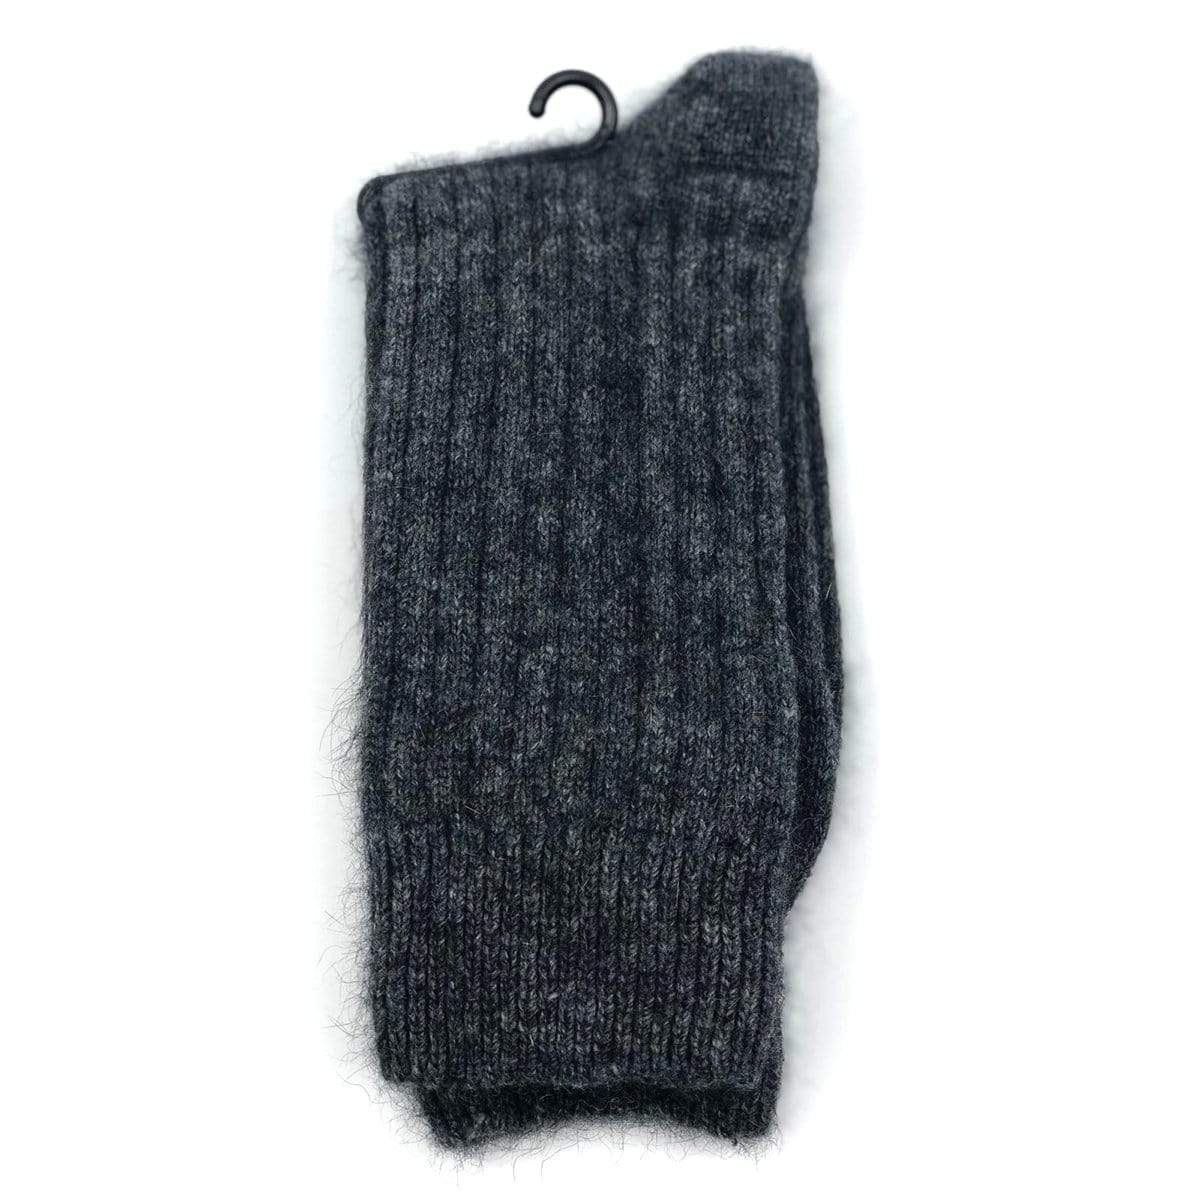 Premium Possum and Merino Wool Ribbed Socks